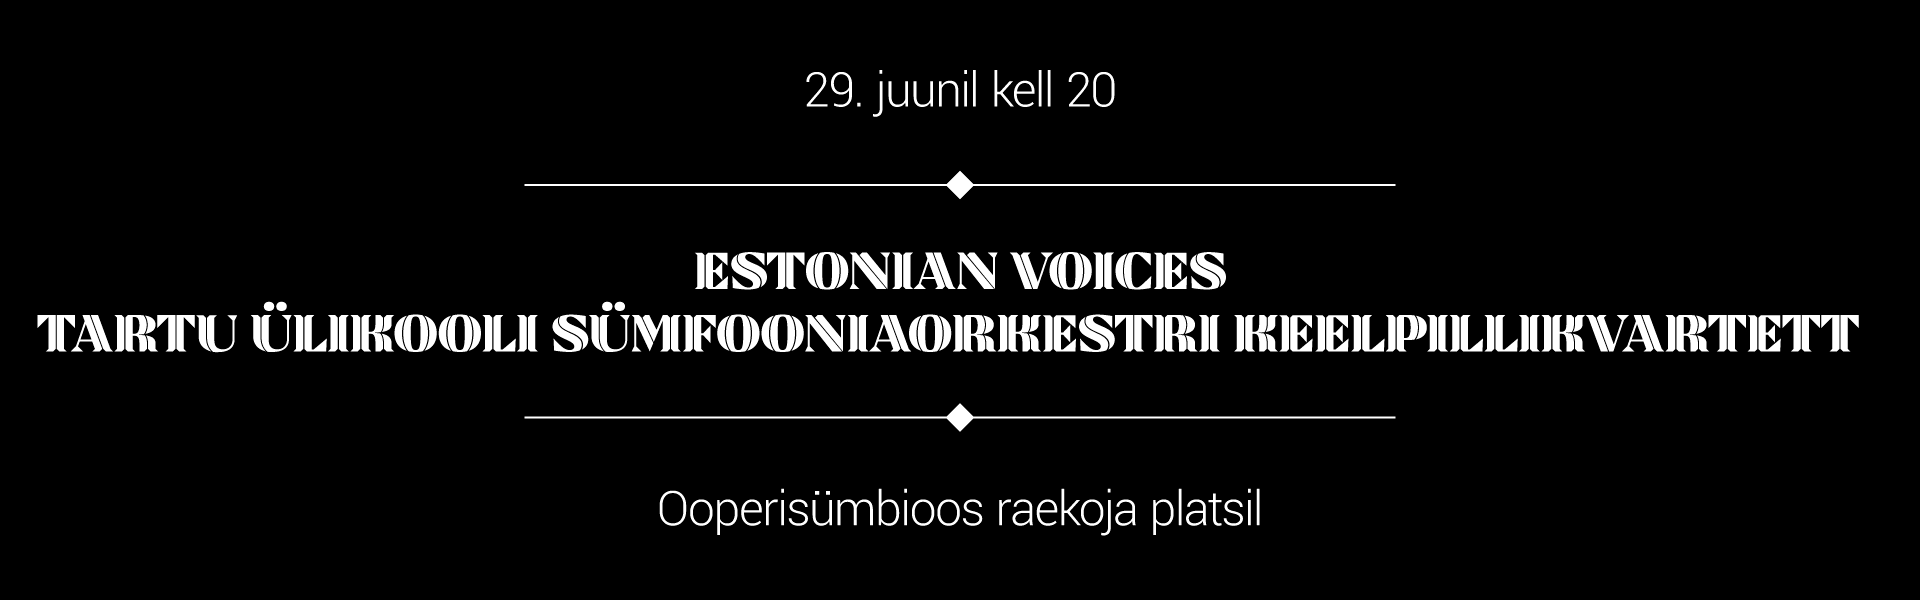 Estonian Voices